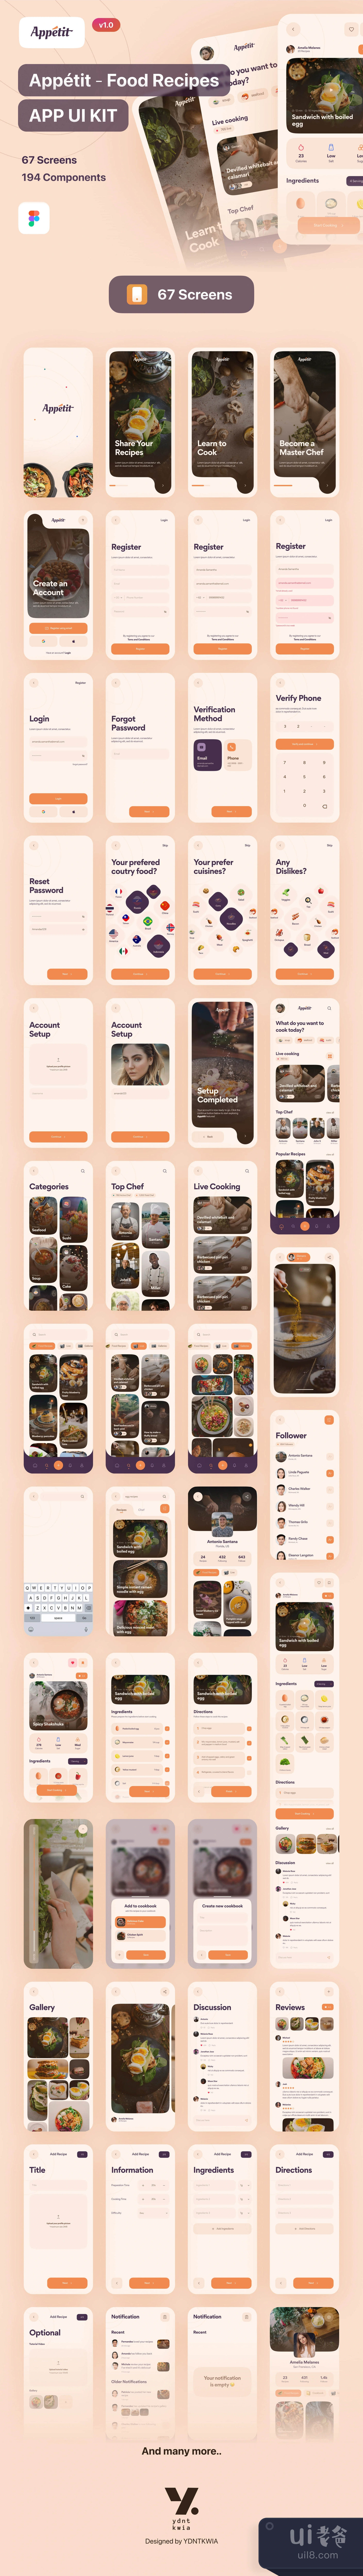 胃口 - 食物食谱应用程序UI套件 (Appetit - Food Recipes App UI K插图1